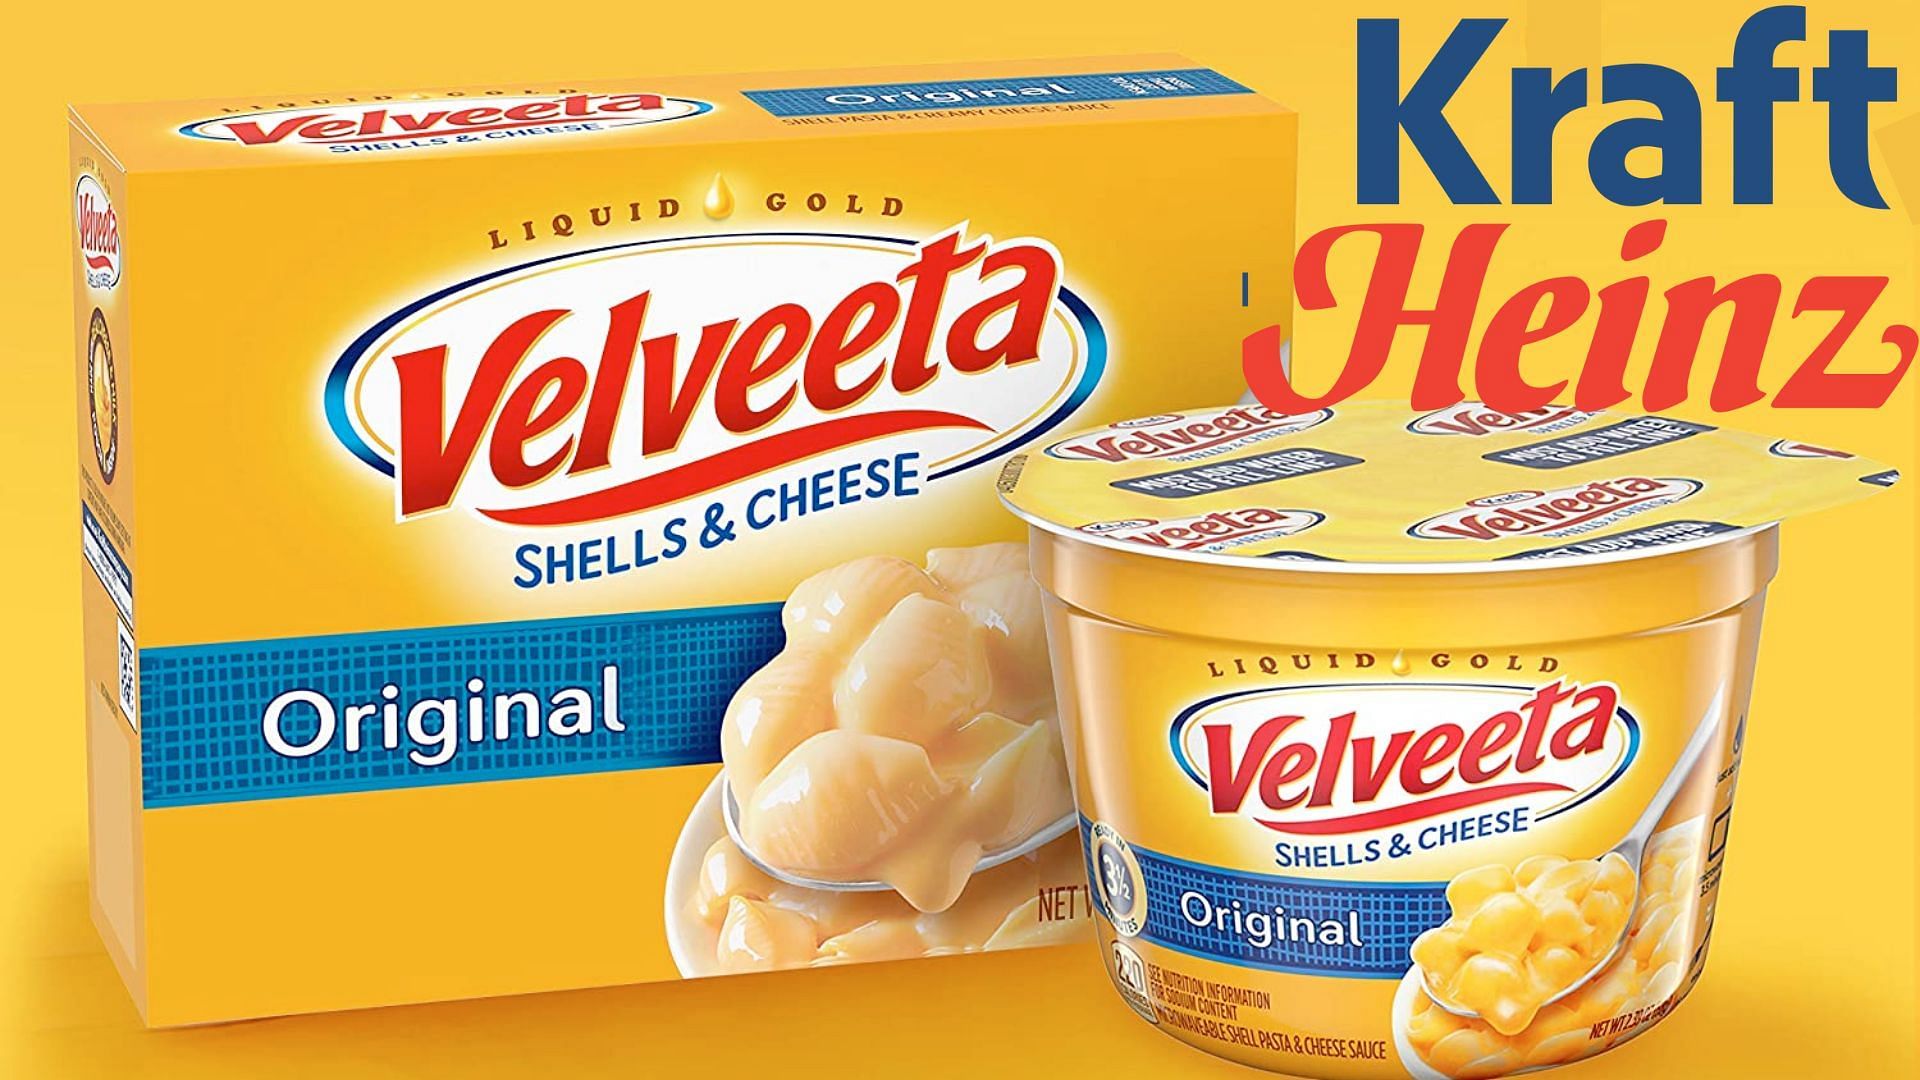 Velveeta is being sued for false advertising (image via Kraft Heinz)